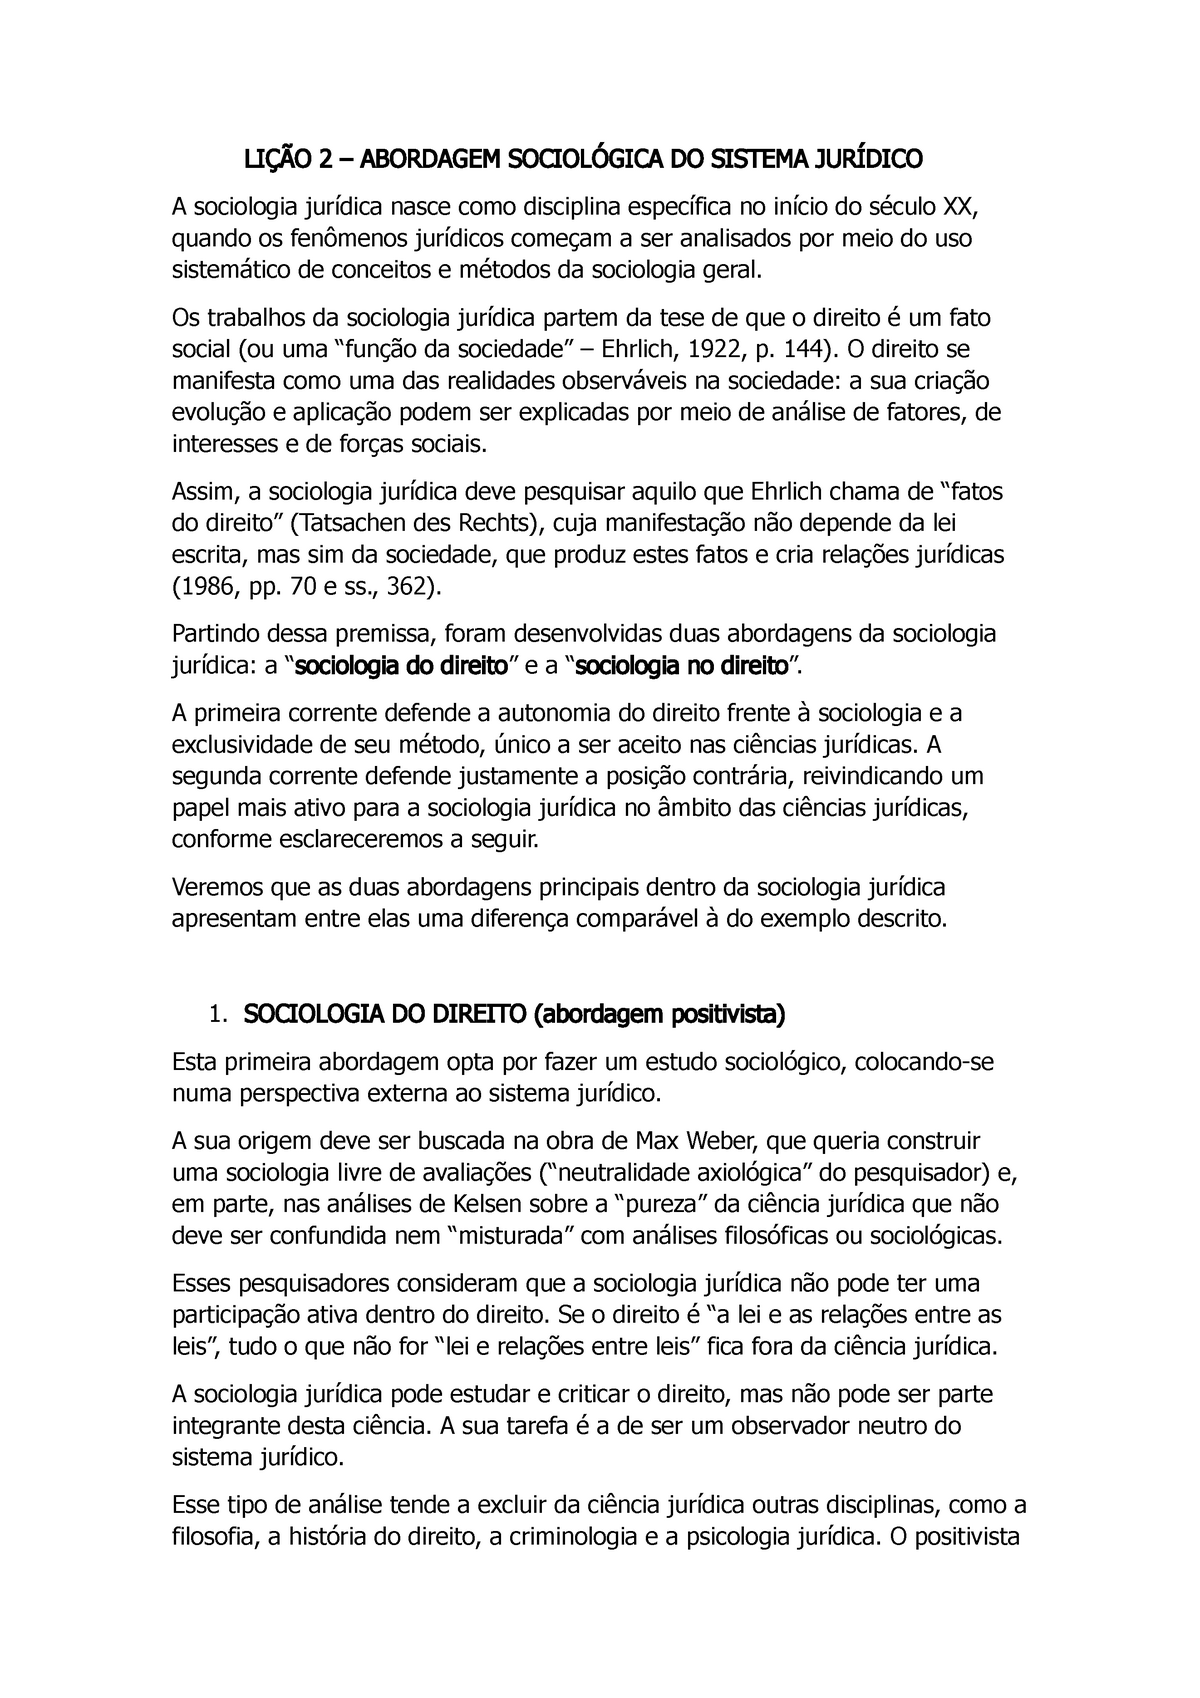 Resumo Lição 03 Manual De Sociologia Jurídica Ana Lucia Sabadell 2 Abordagem Do Sistema A 5020